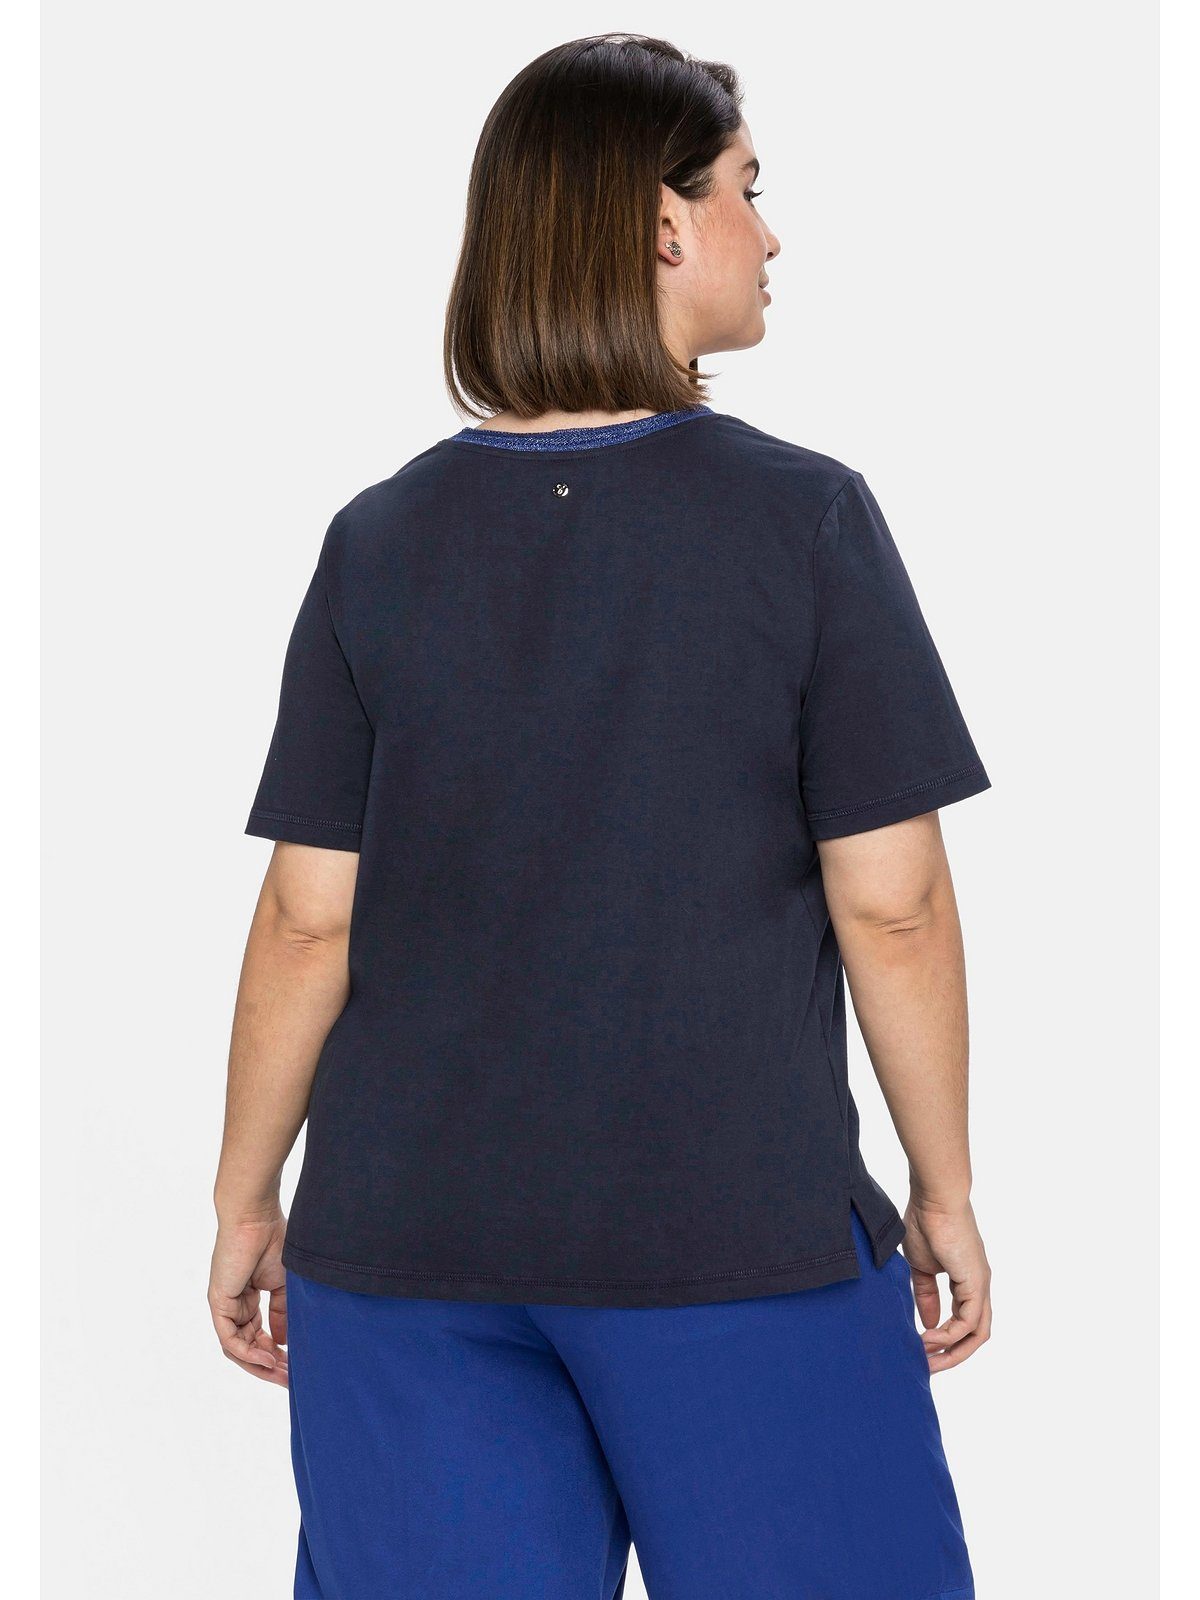 T-Shirt und am Ausschnitt Sheego Größen Große Effektgarn Frontdruck nachtblau mit modischem